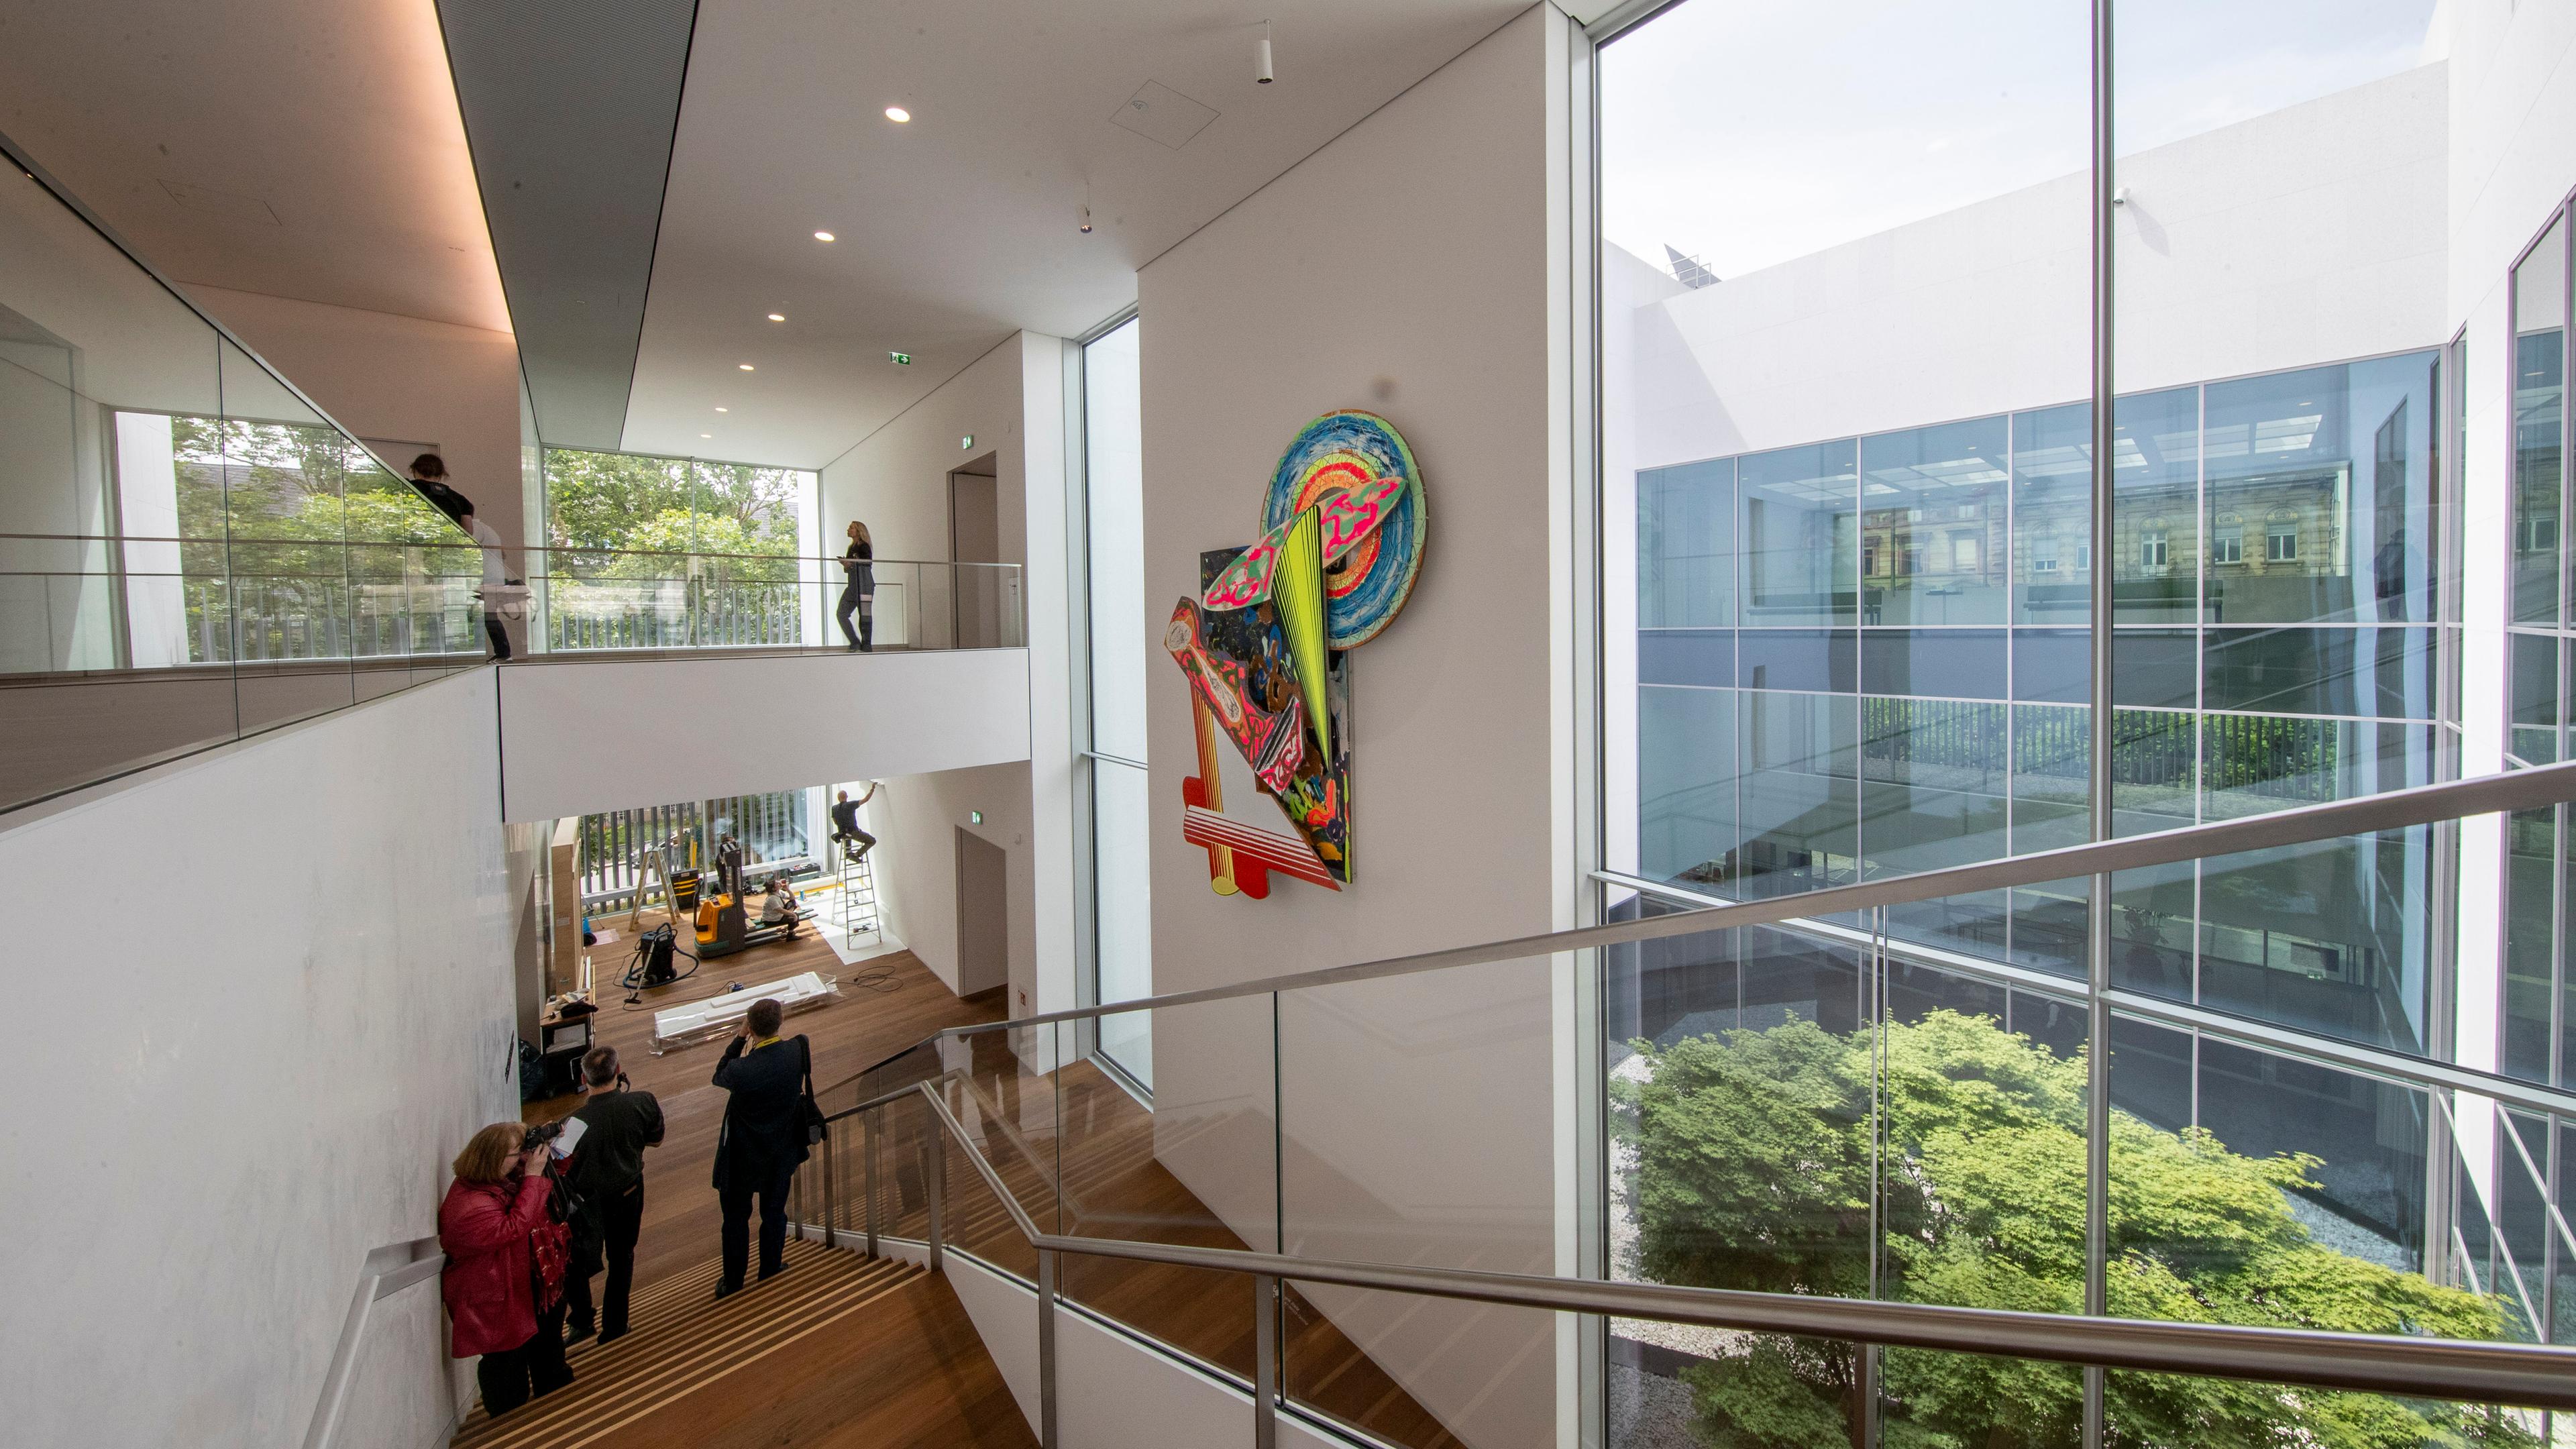 Ein Werk des Künstlers Frank Stella hängt im Treppenhaus des neu eröffneten Museums Reinhard Ernst.